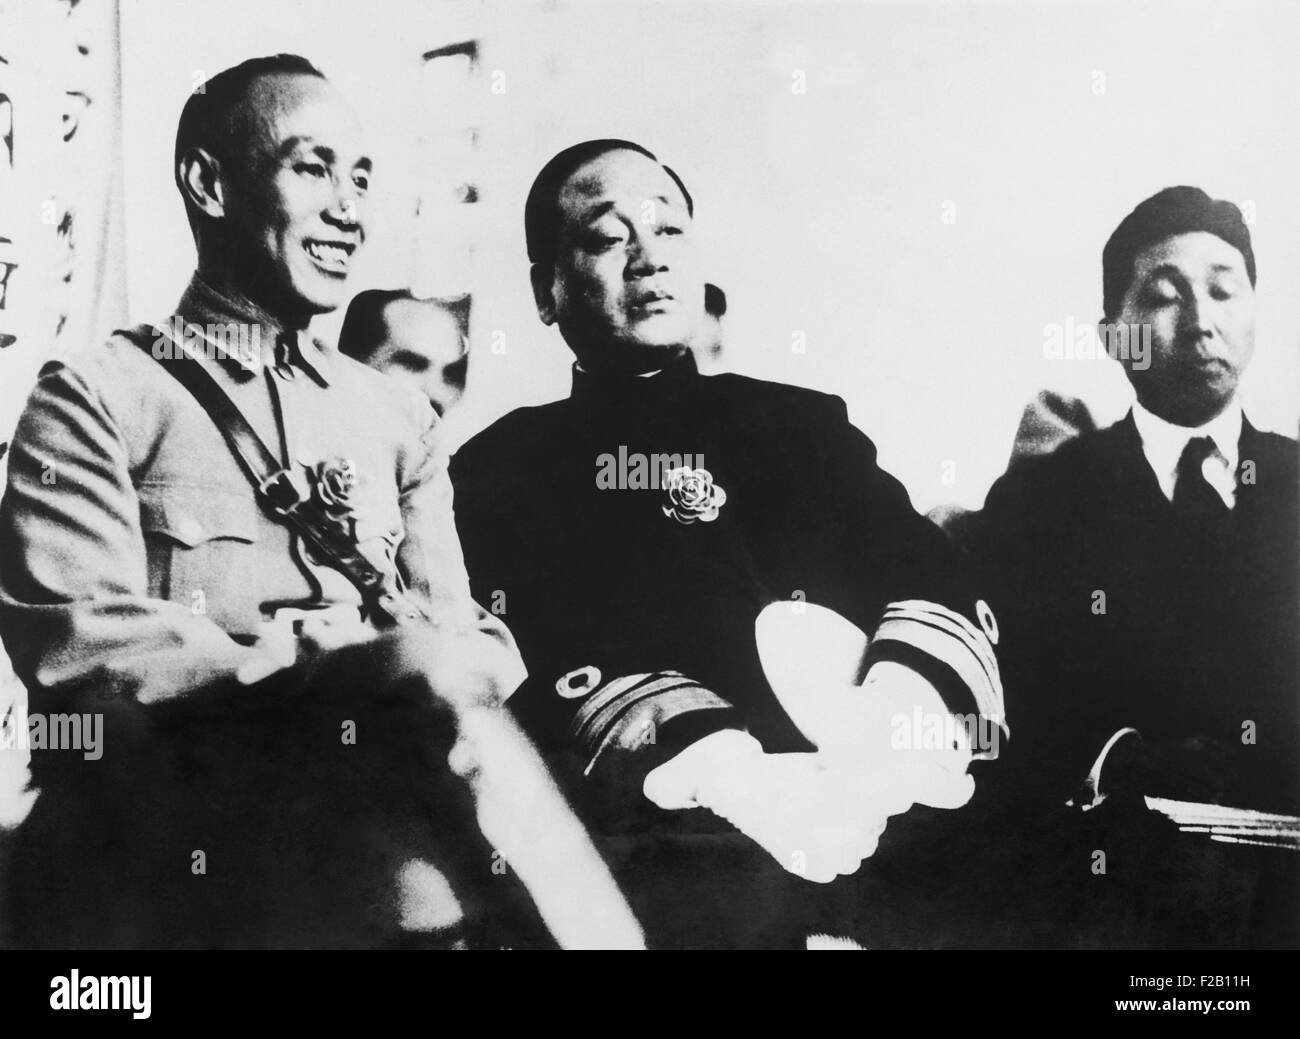 General Chiang Kai-Shek und Admiral Yang Xuancheng, ca. Juni 1927. Rechter Flügel Fraktionen der Kuomintang-Partei Chiang führte der Shanghai Massaker der Kommunisten am 12. April 1927. Dies war der Beginn des chinesischen Bürgerkriegs, die einen Sieg der Kommunisten im Jahr 1949 endete. Yang Xuancheng leitete chinesischen militärischen Geheimdienst während des zweiten Weltkriegs. (CSU 2015 8 660) Stockfoto